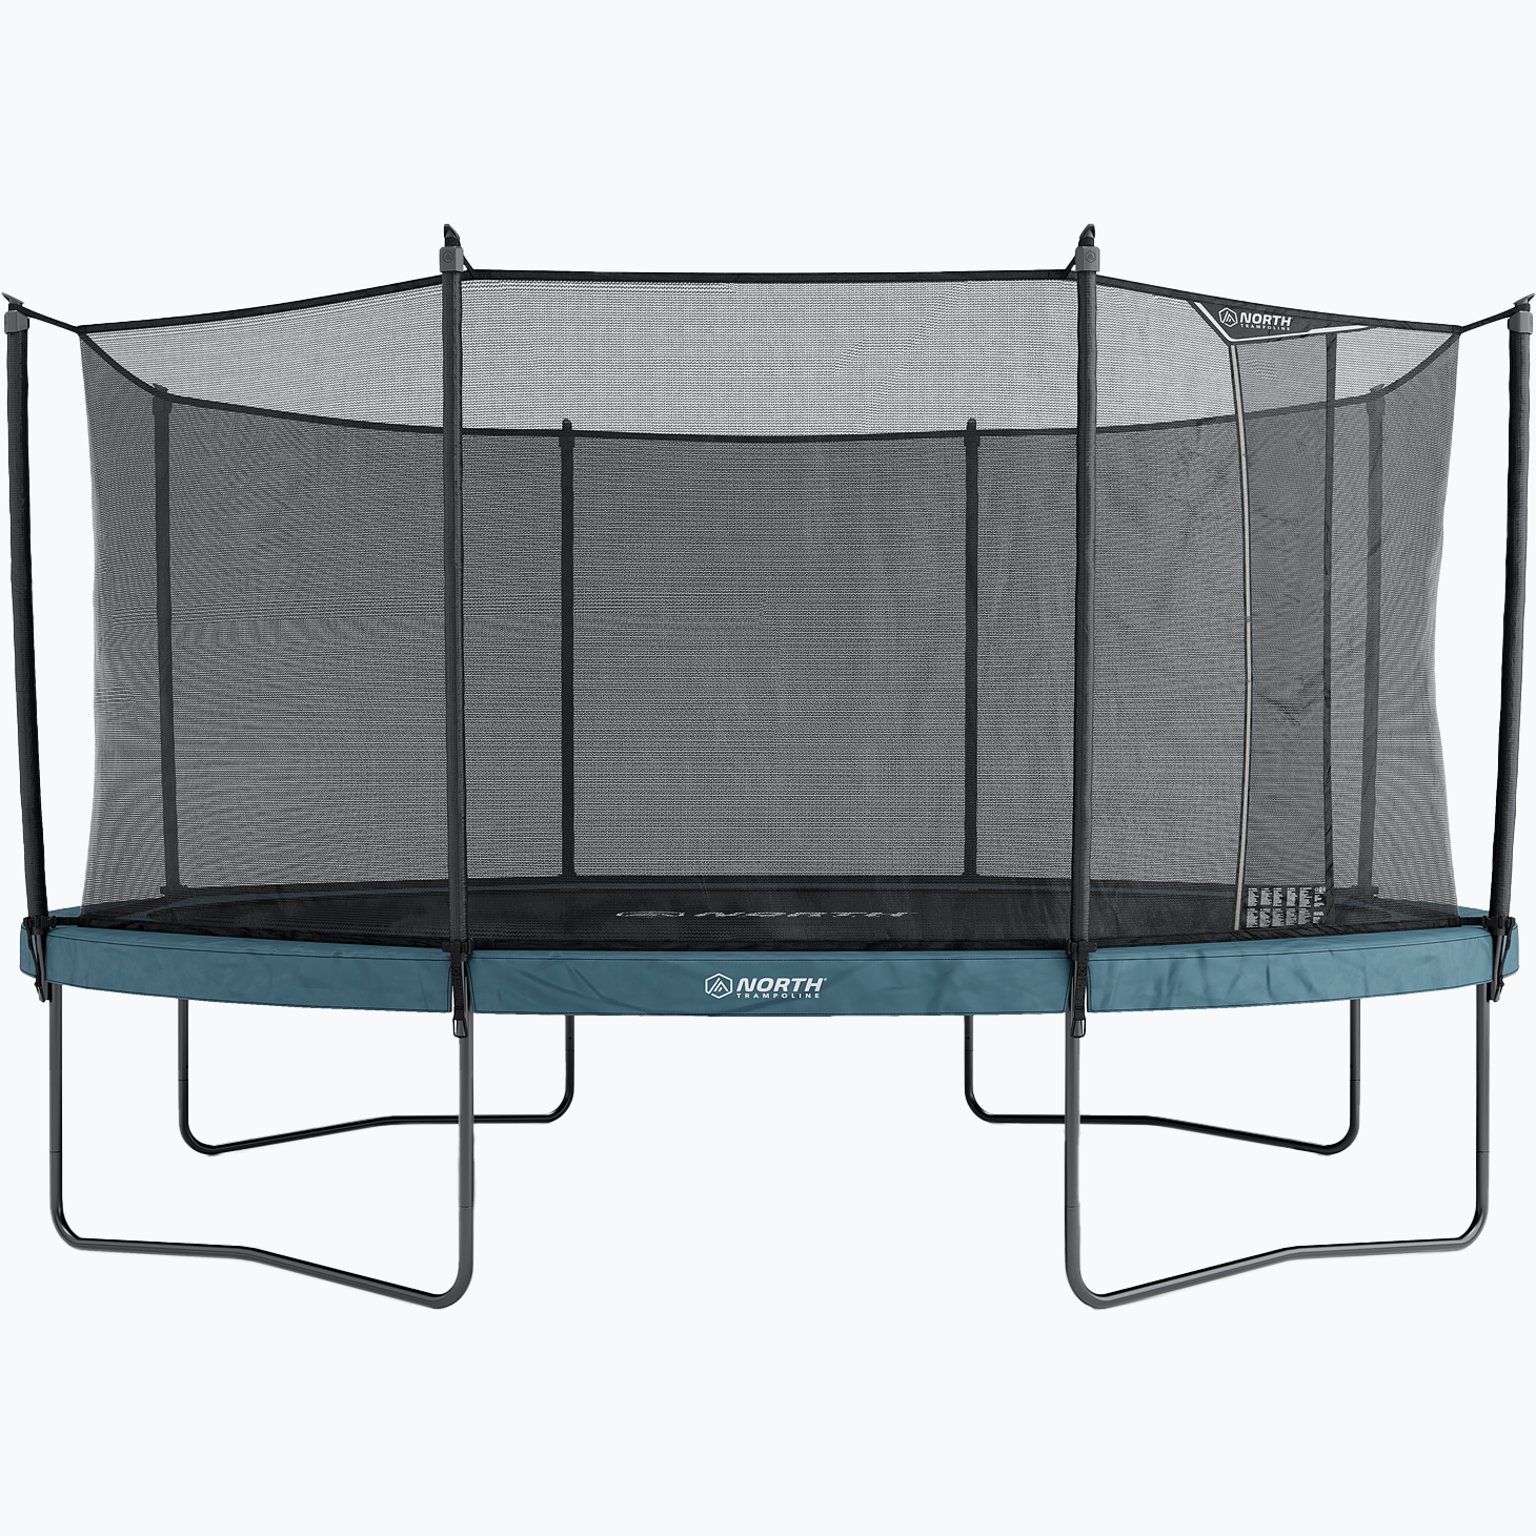 Pioneer Oval 500 + Safety Net trampolinpaket